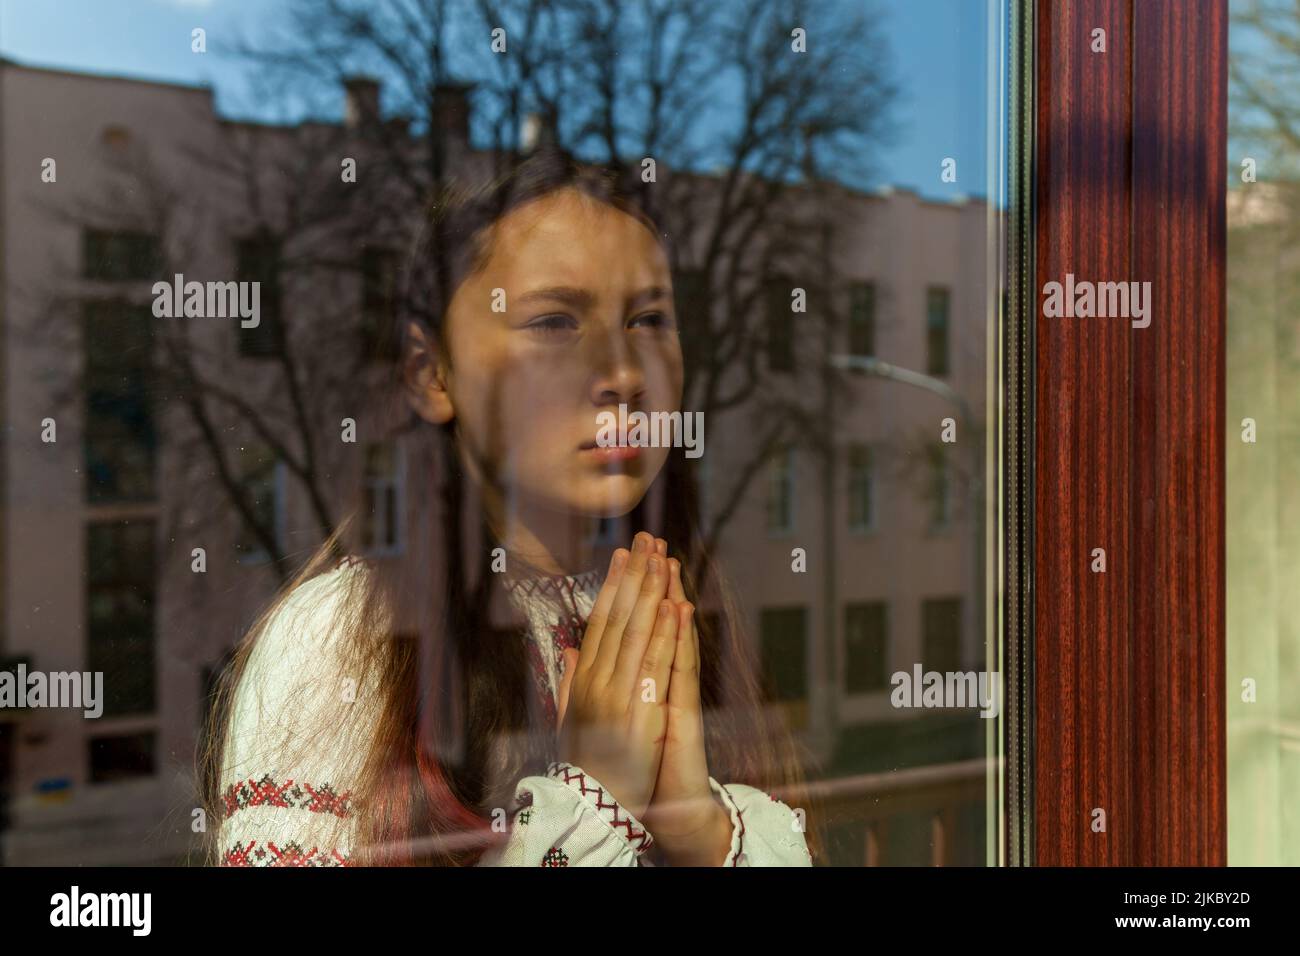 Una chica con un vestido bordado reza cerca de la ventana. La niña protesta contra la guerra y muestra patriotismo y amor por Ucrania. Ucraniano-ruso Foto de stock